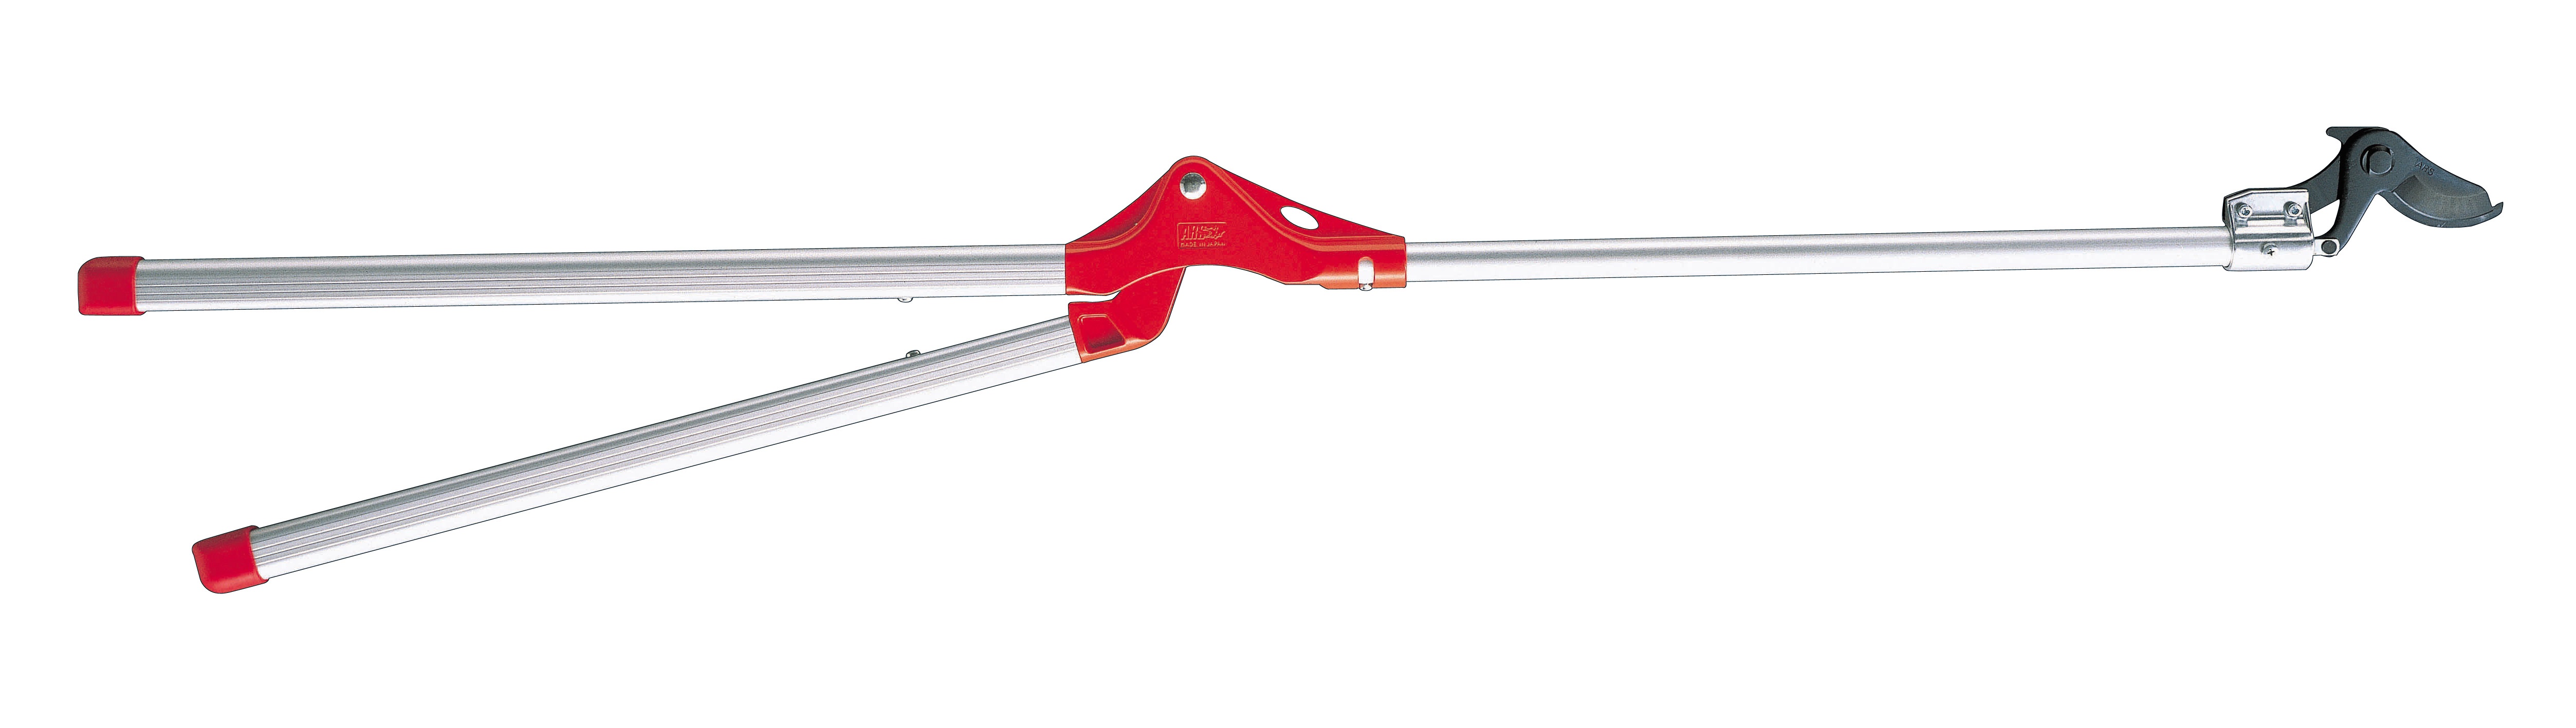 Long arm lopping shears - Ø 40 mm - length 180 cm - 1.700 g